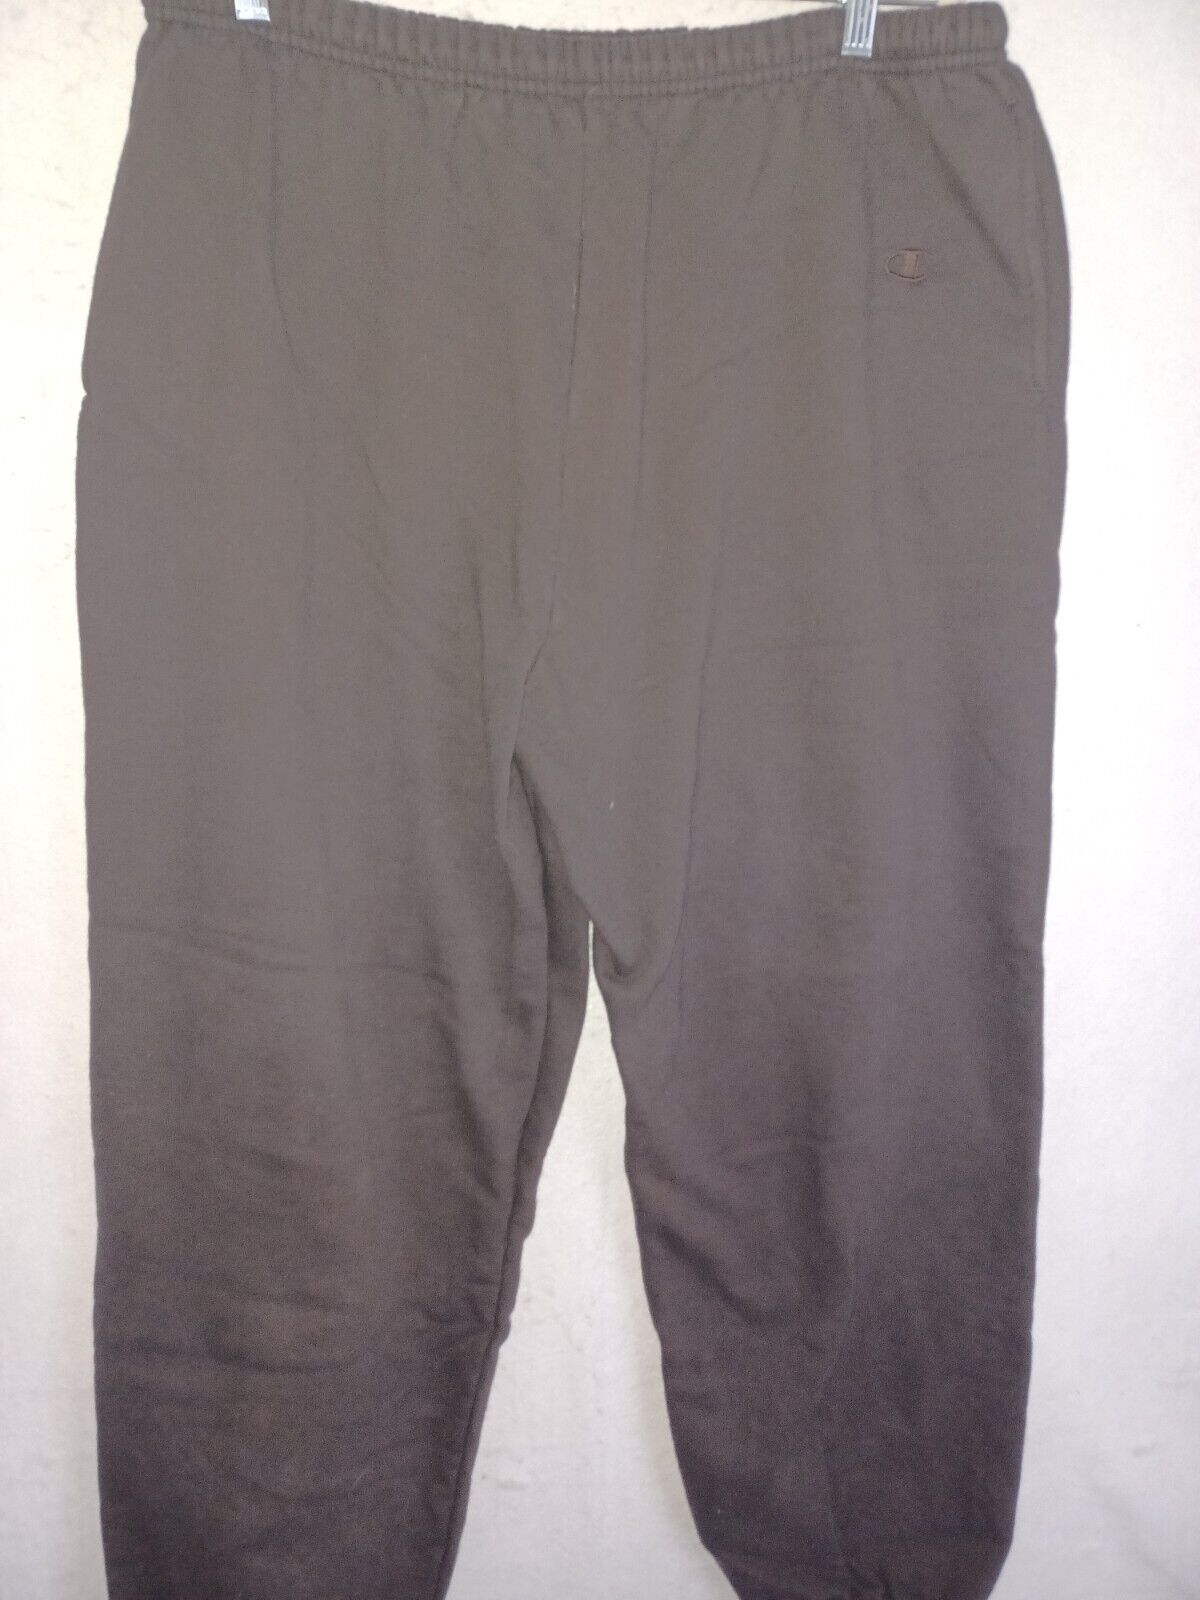 Vintage Champion Sweatpants Reverse Weave Brown Cotton Blend Adult 2X ...